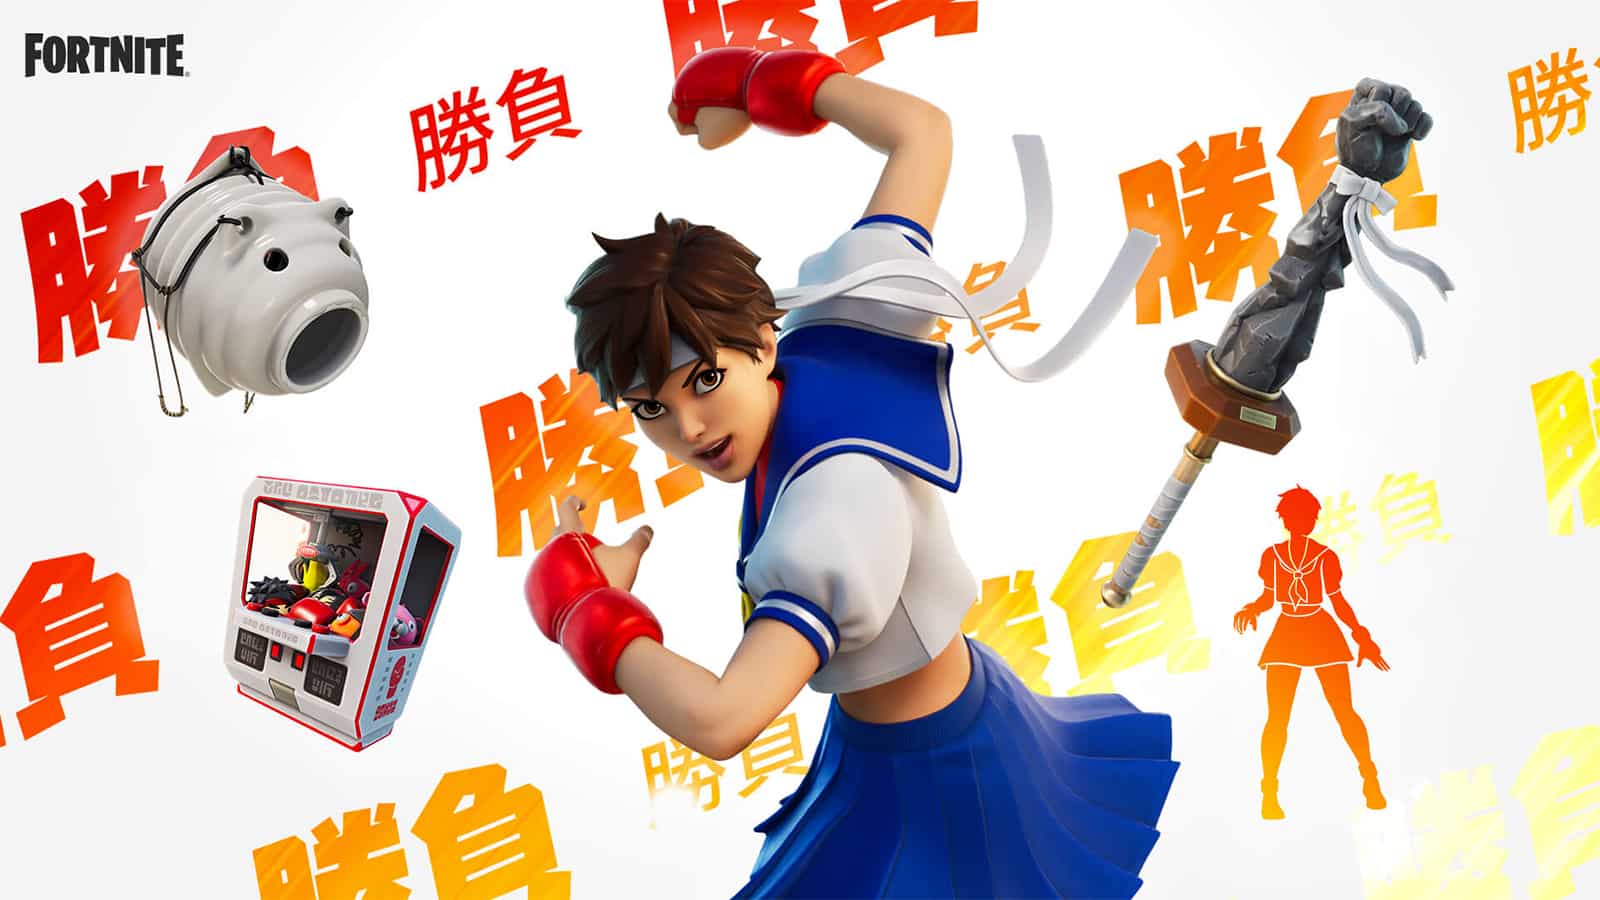 Street Fighter's Sakura skin in Fortnite